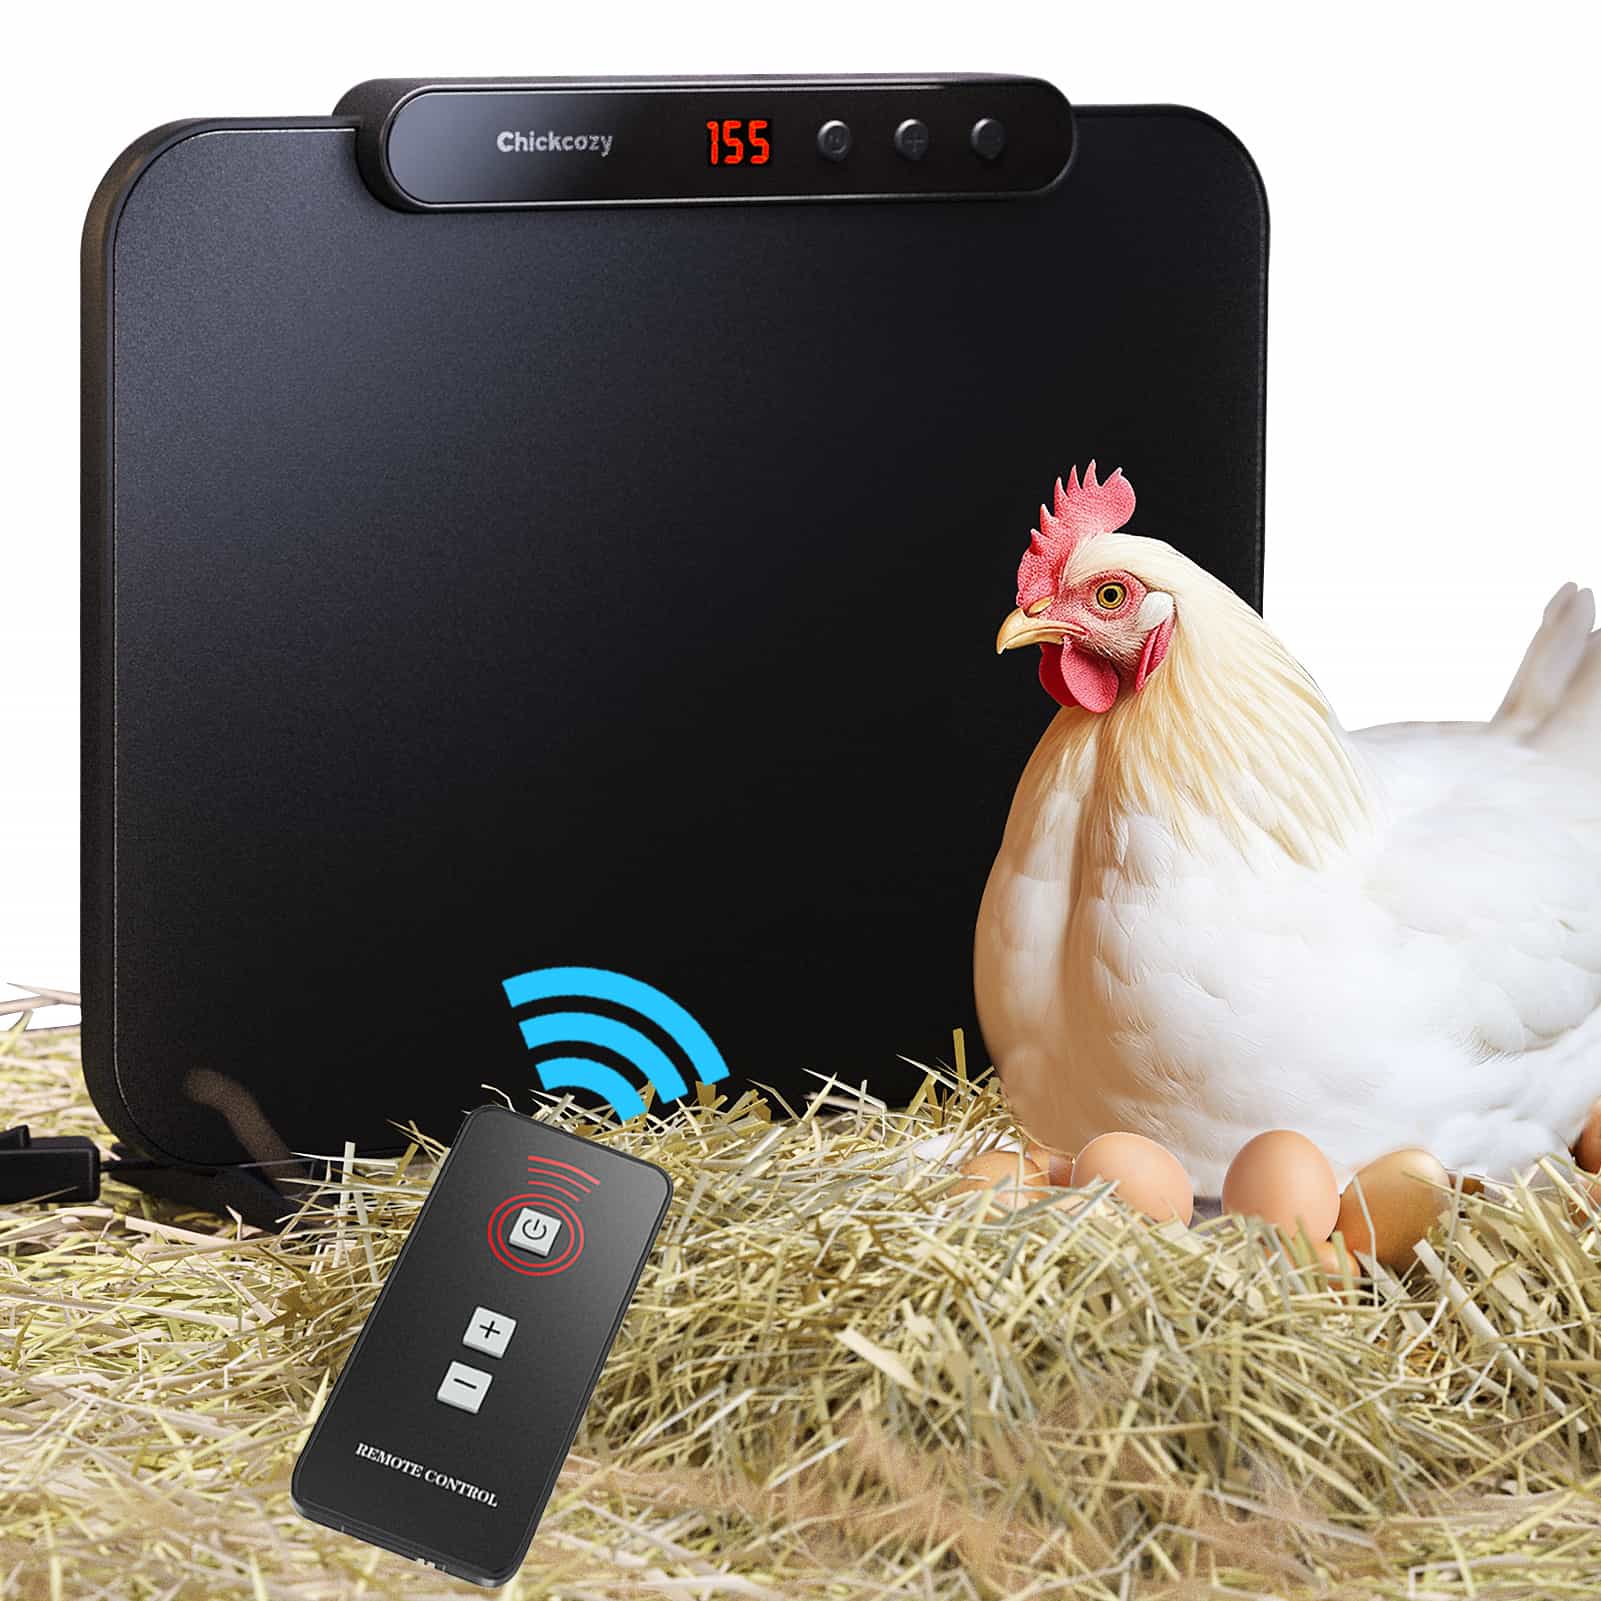 remote control chicken coop heater